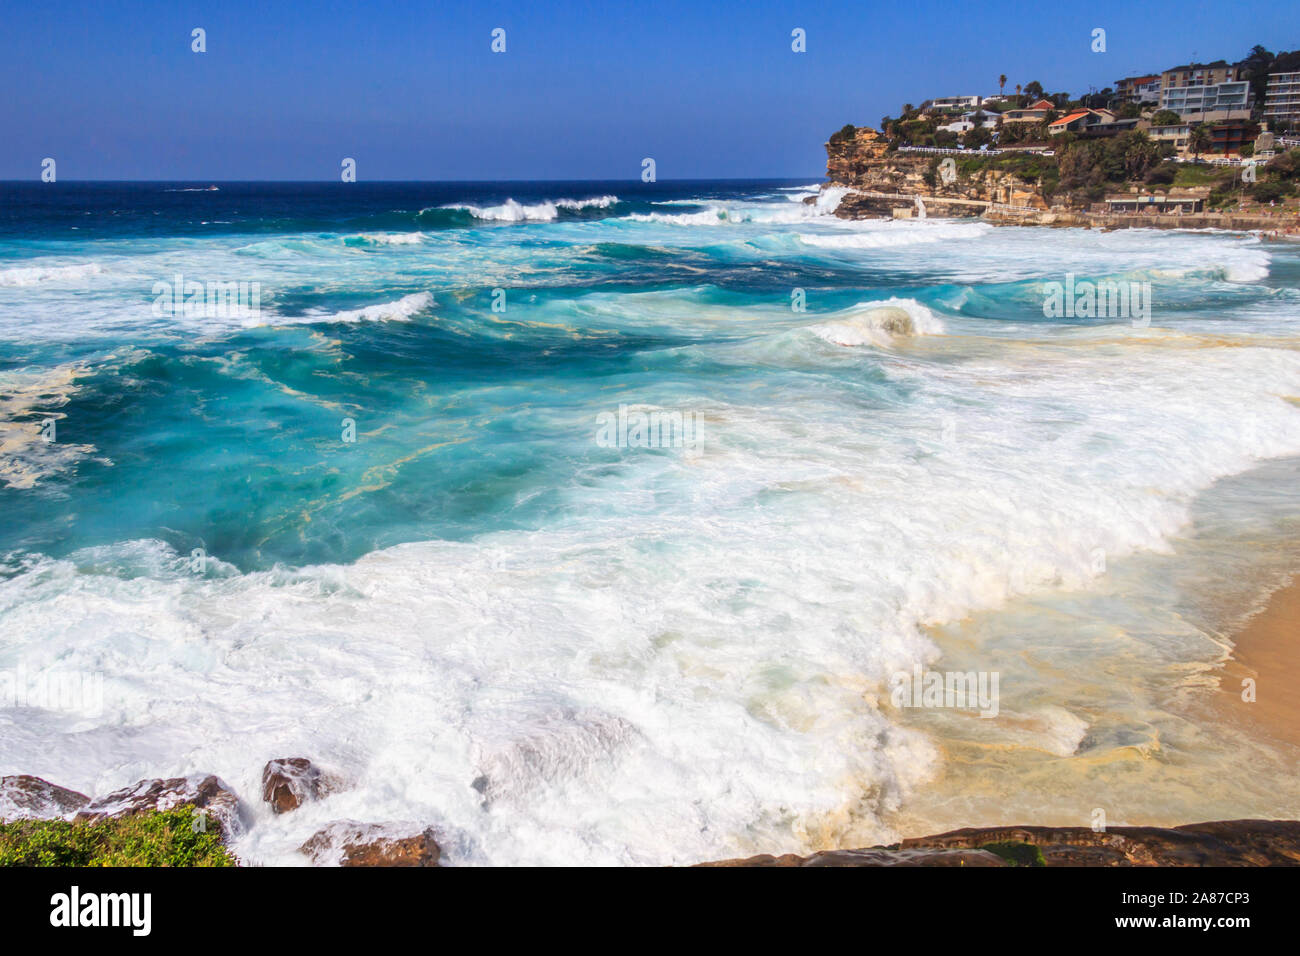 Rough seas at Tamarama beach on the Coogee to Bondi coastal walk, Sydney, New South Wales, Australia Stock Photo